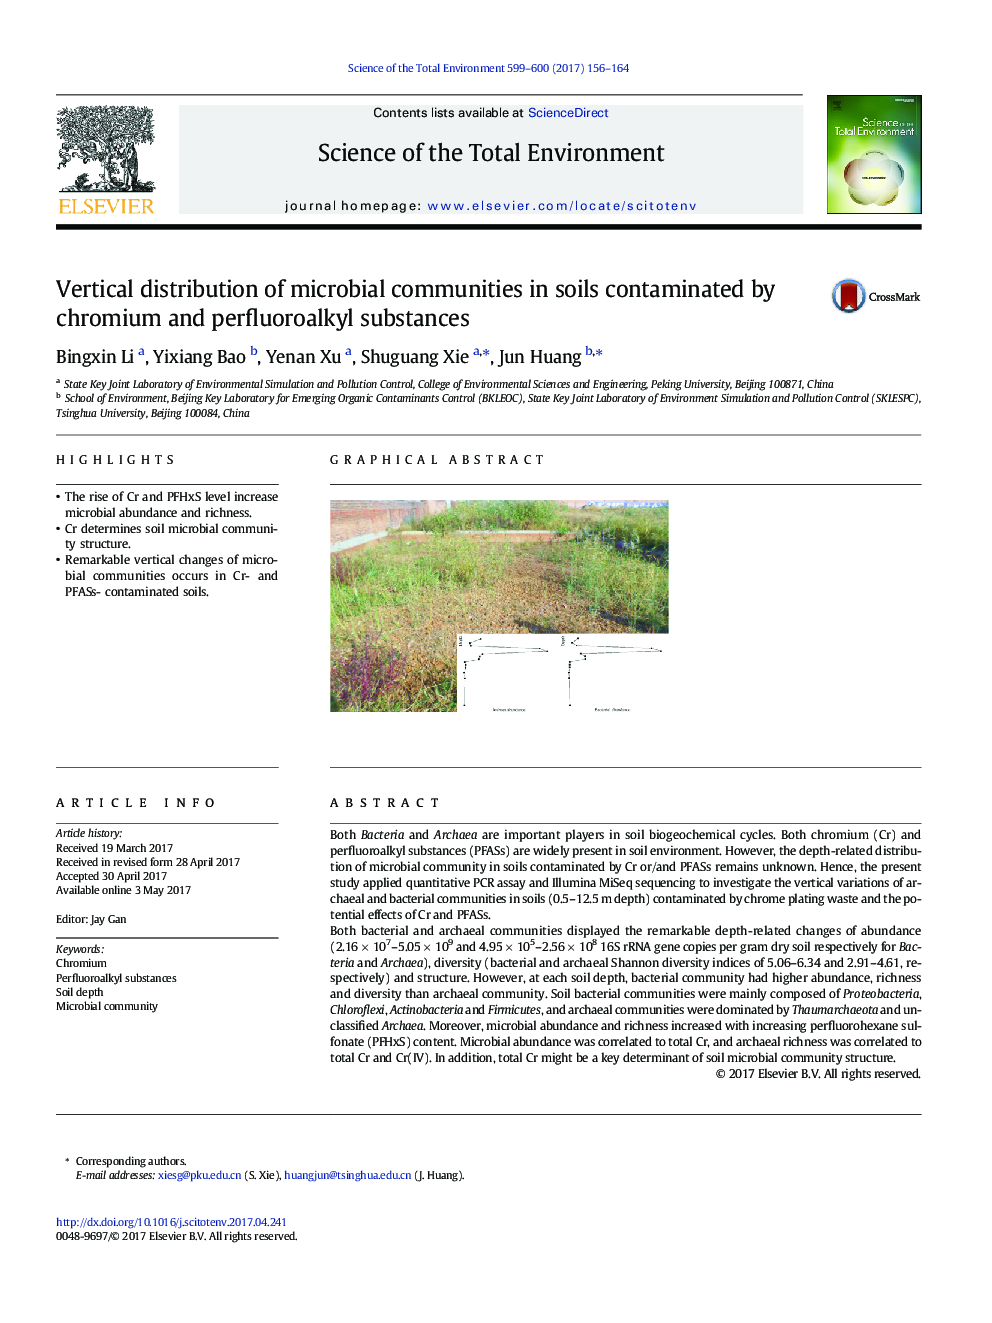 توزیع عمودی جوامع میکروبی در خاک های آلوده به مواد کروم و پرفروفیالکلی 